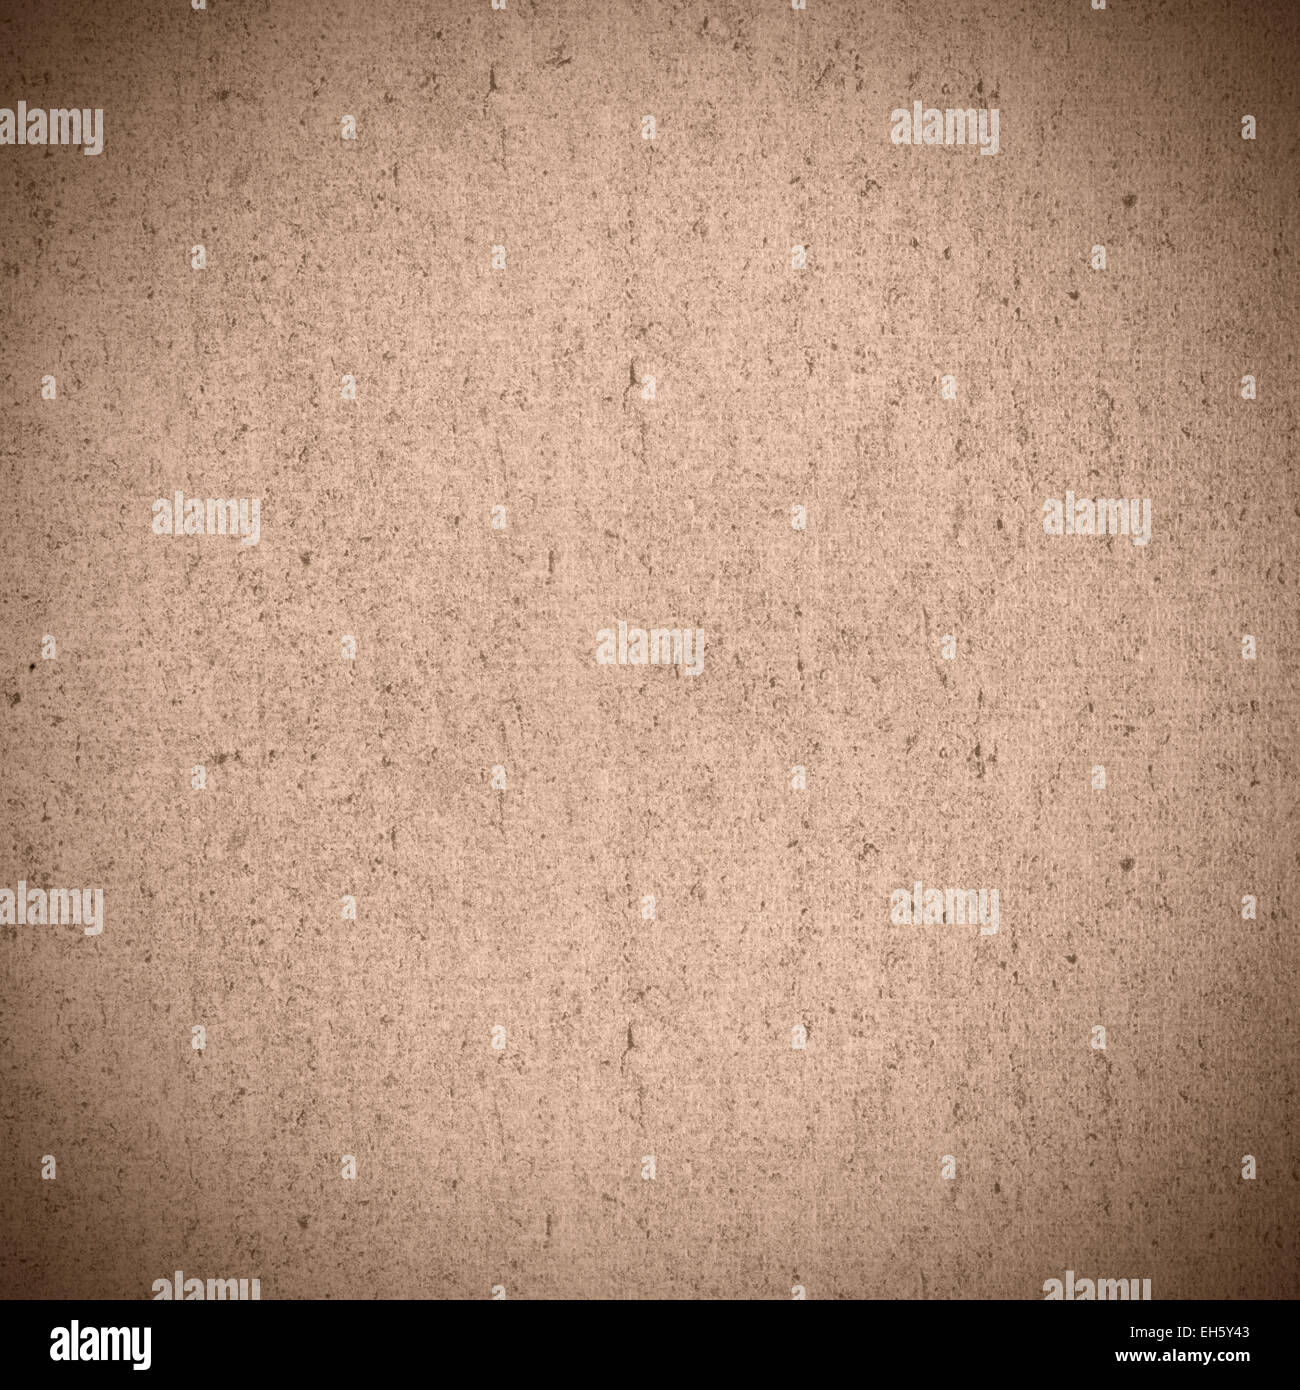 La texture ou motif rugueux brun sépia abstract background Banque D'Images